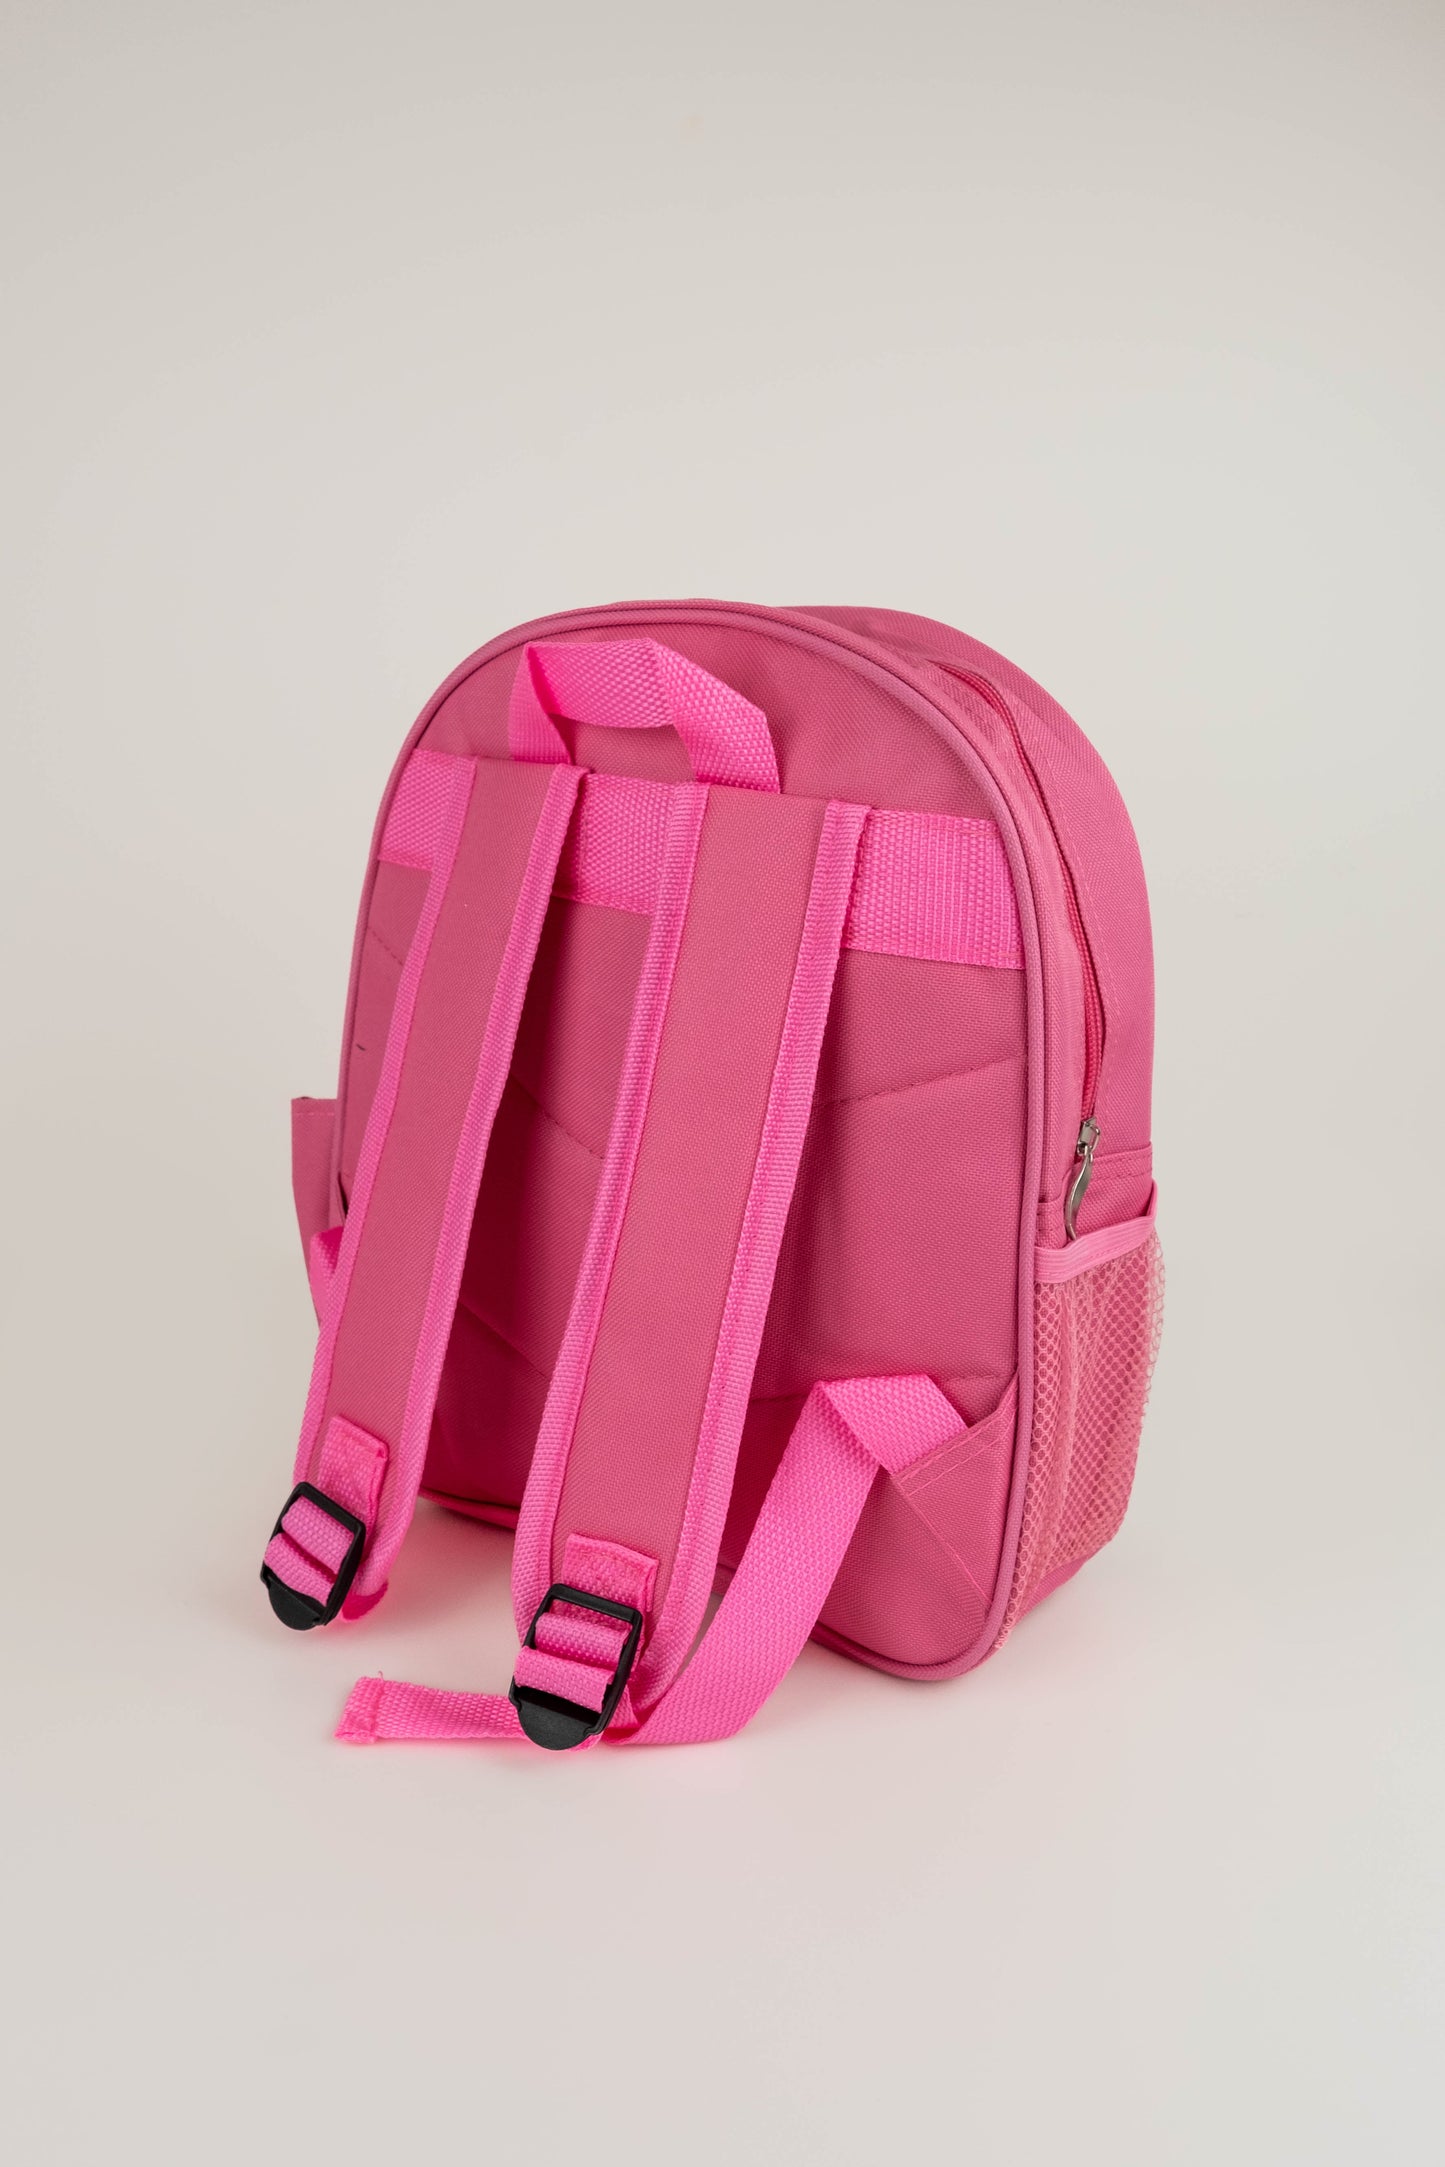 Children’s Personalised Backpack - Dinosaur Design